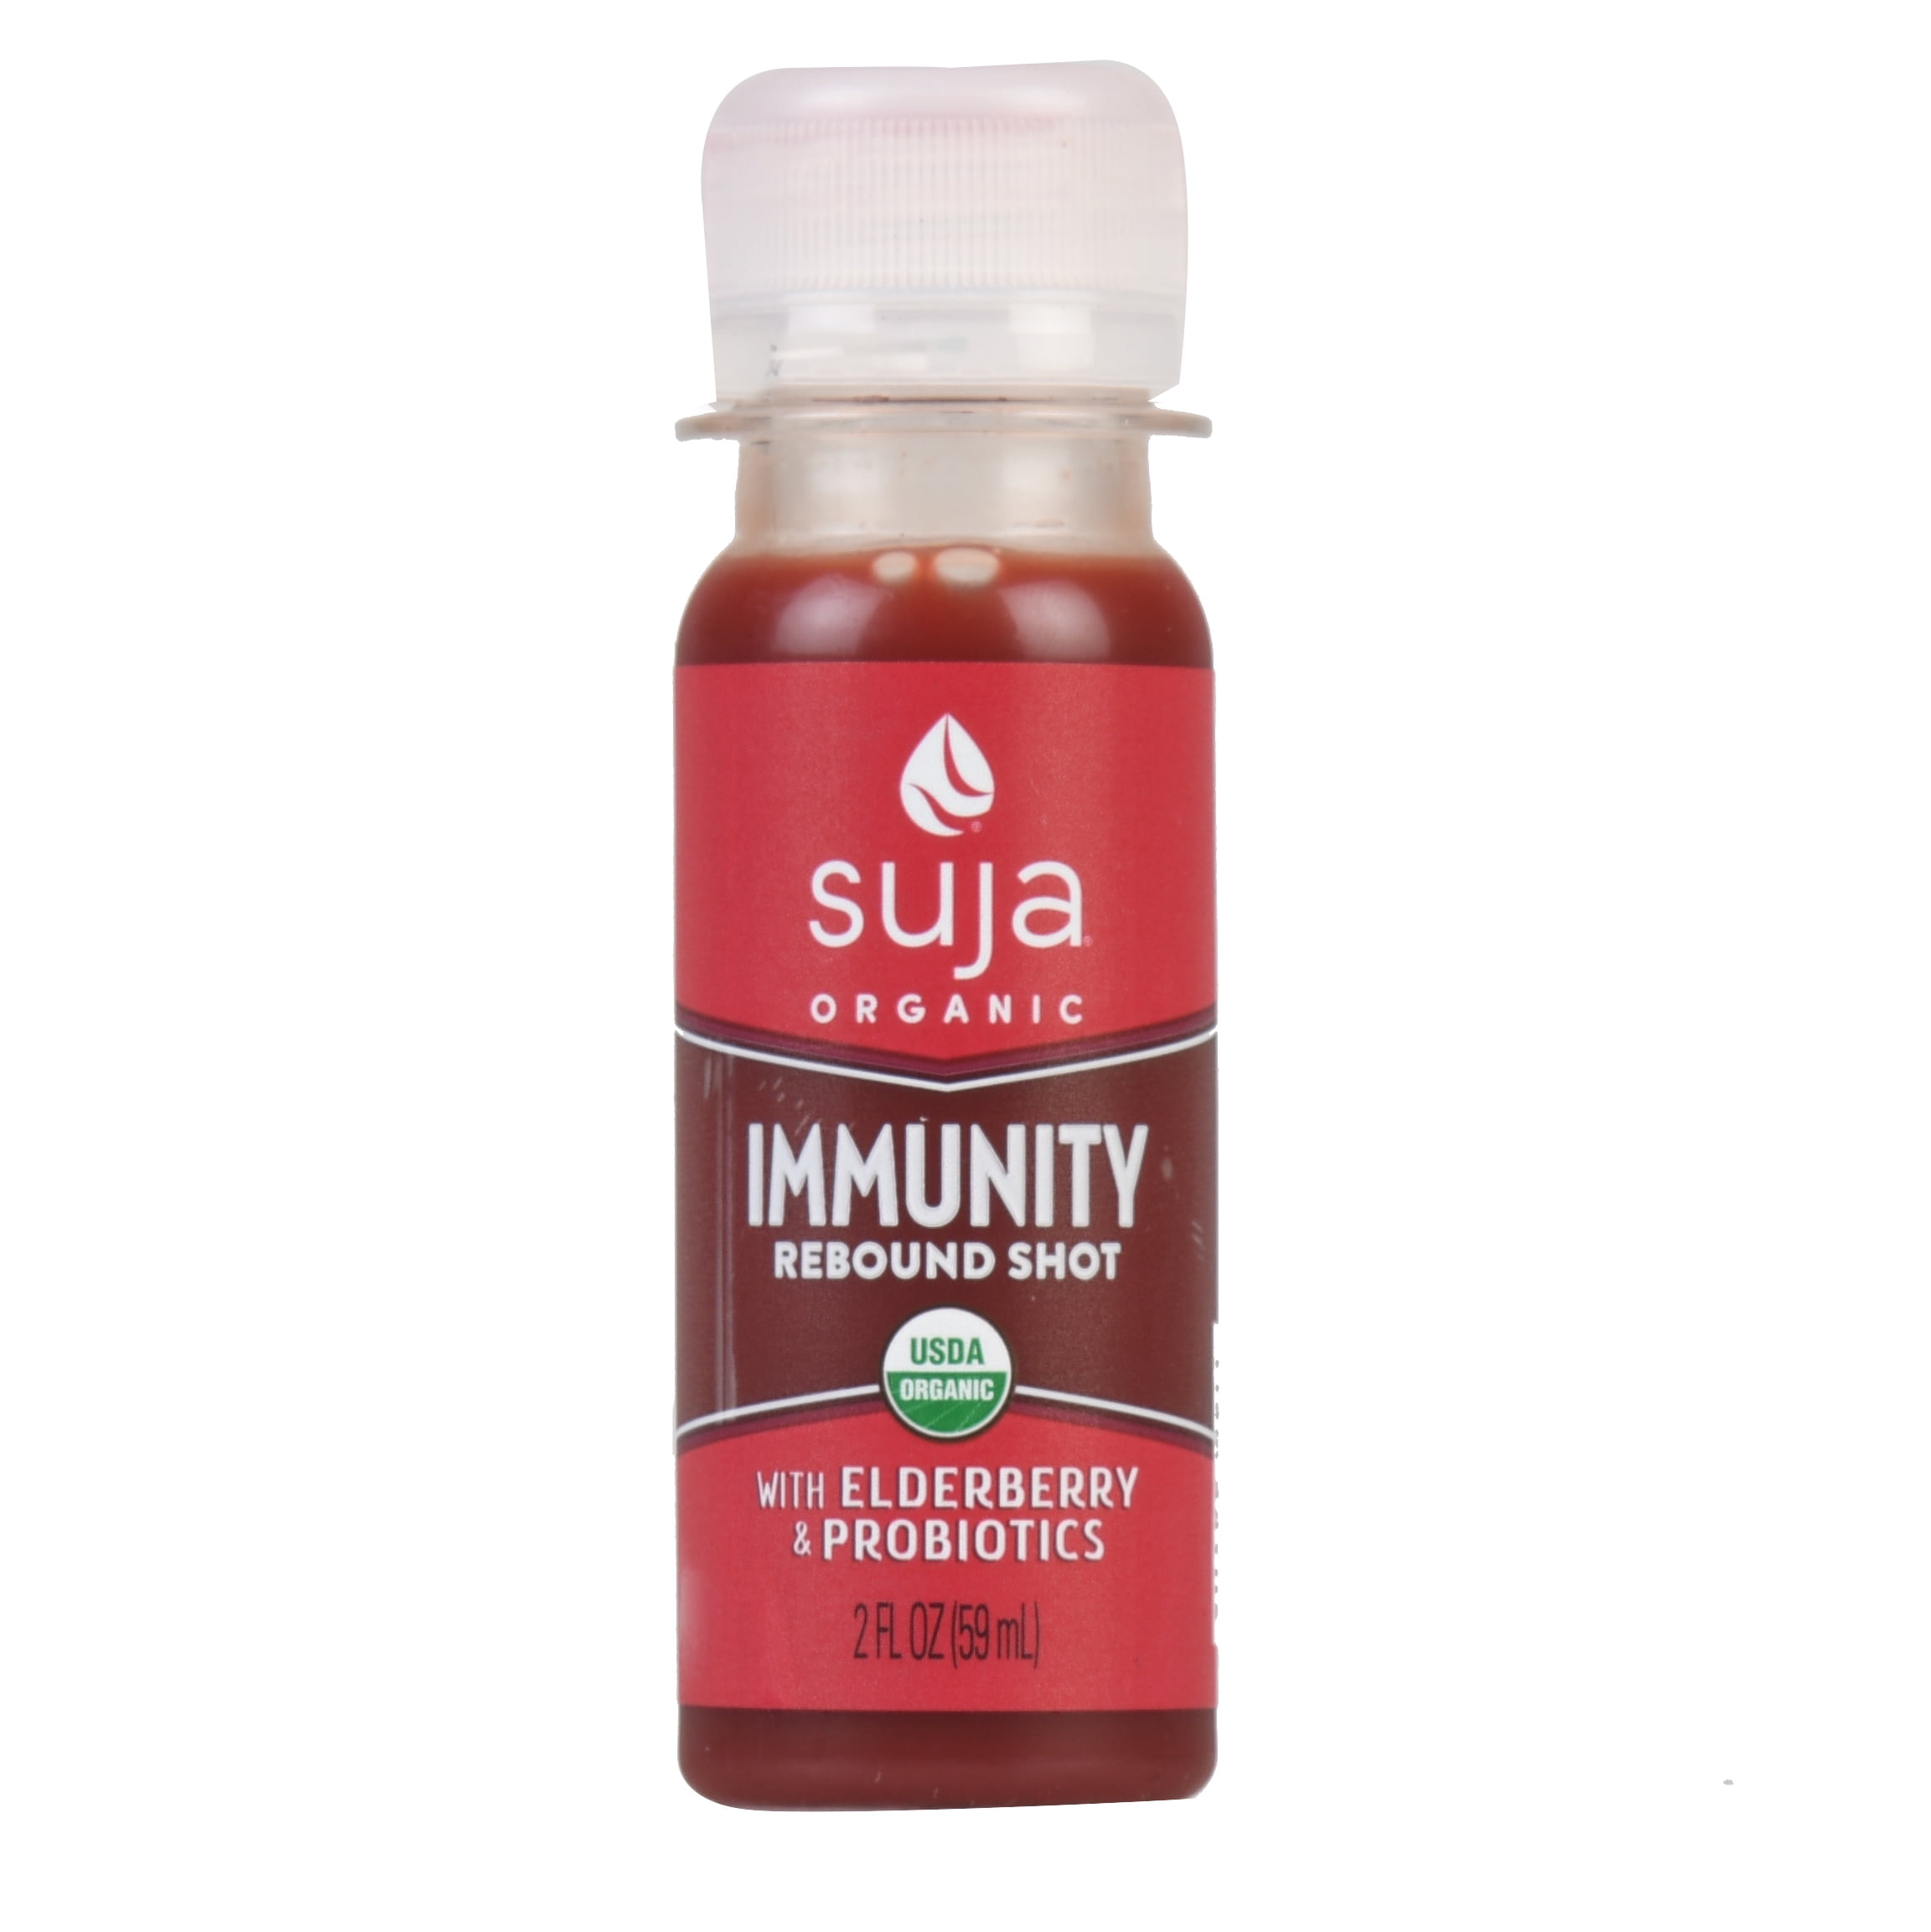 suja organic immunity daily shot